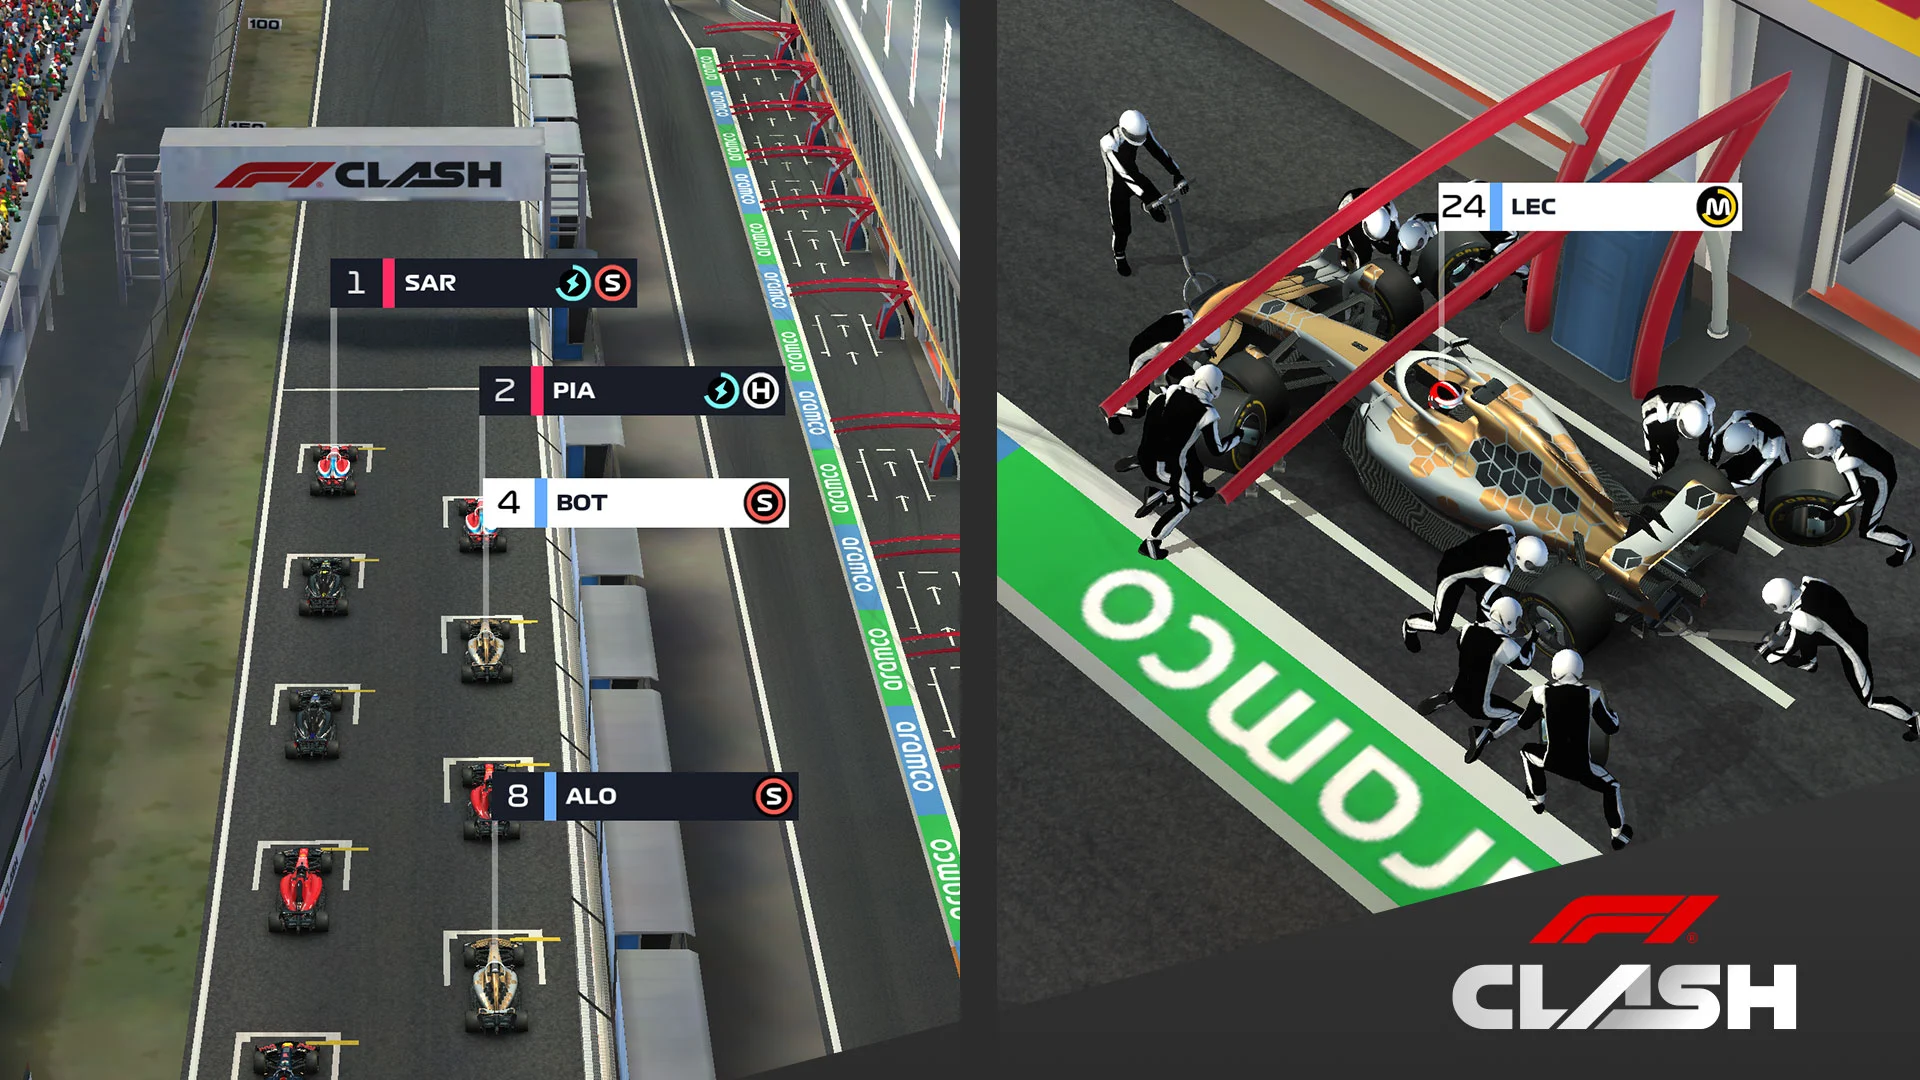 F1 Clash mod apk latest version